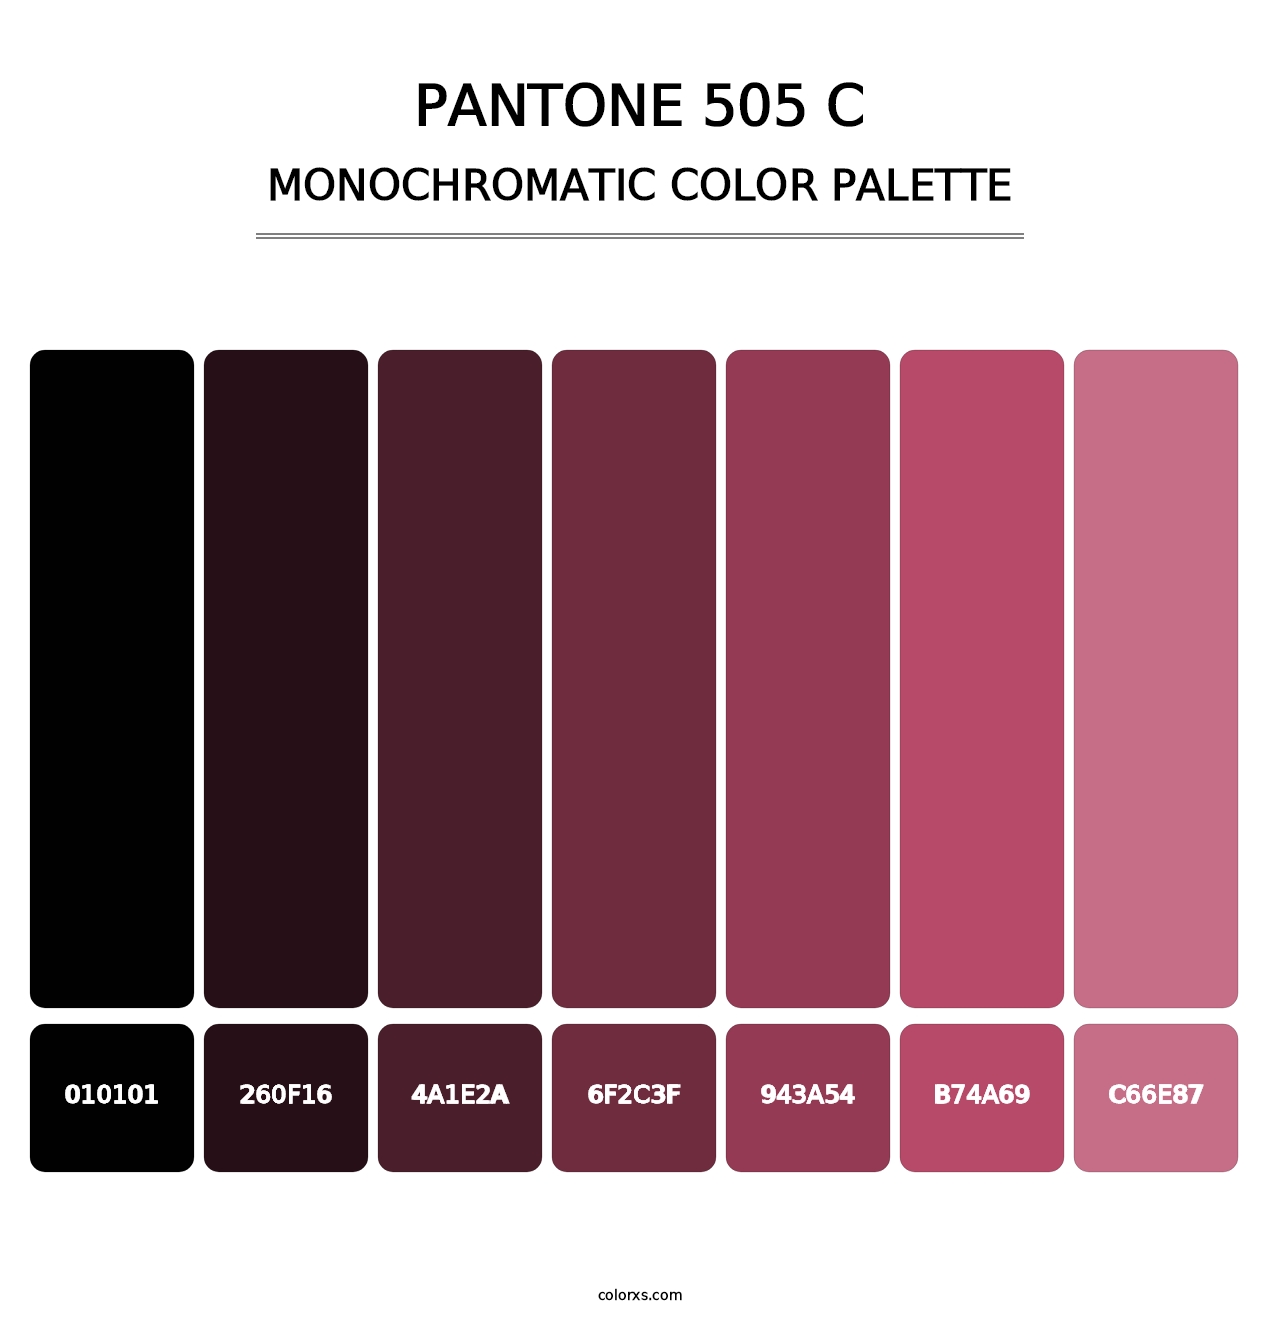 PANTONE 505 C - Monochromatic Color Palette